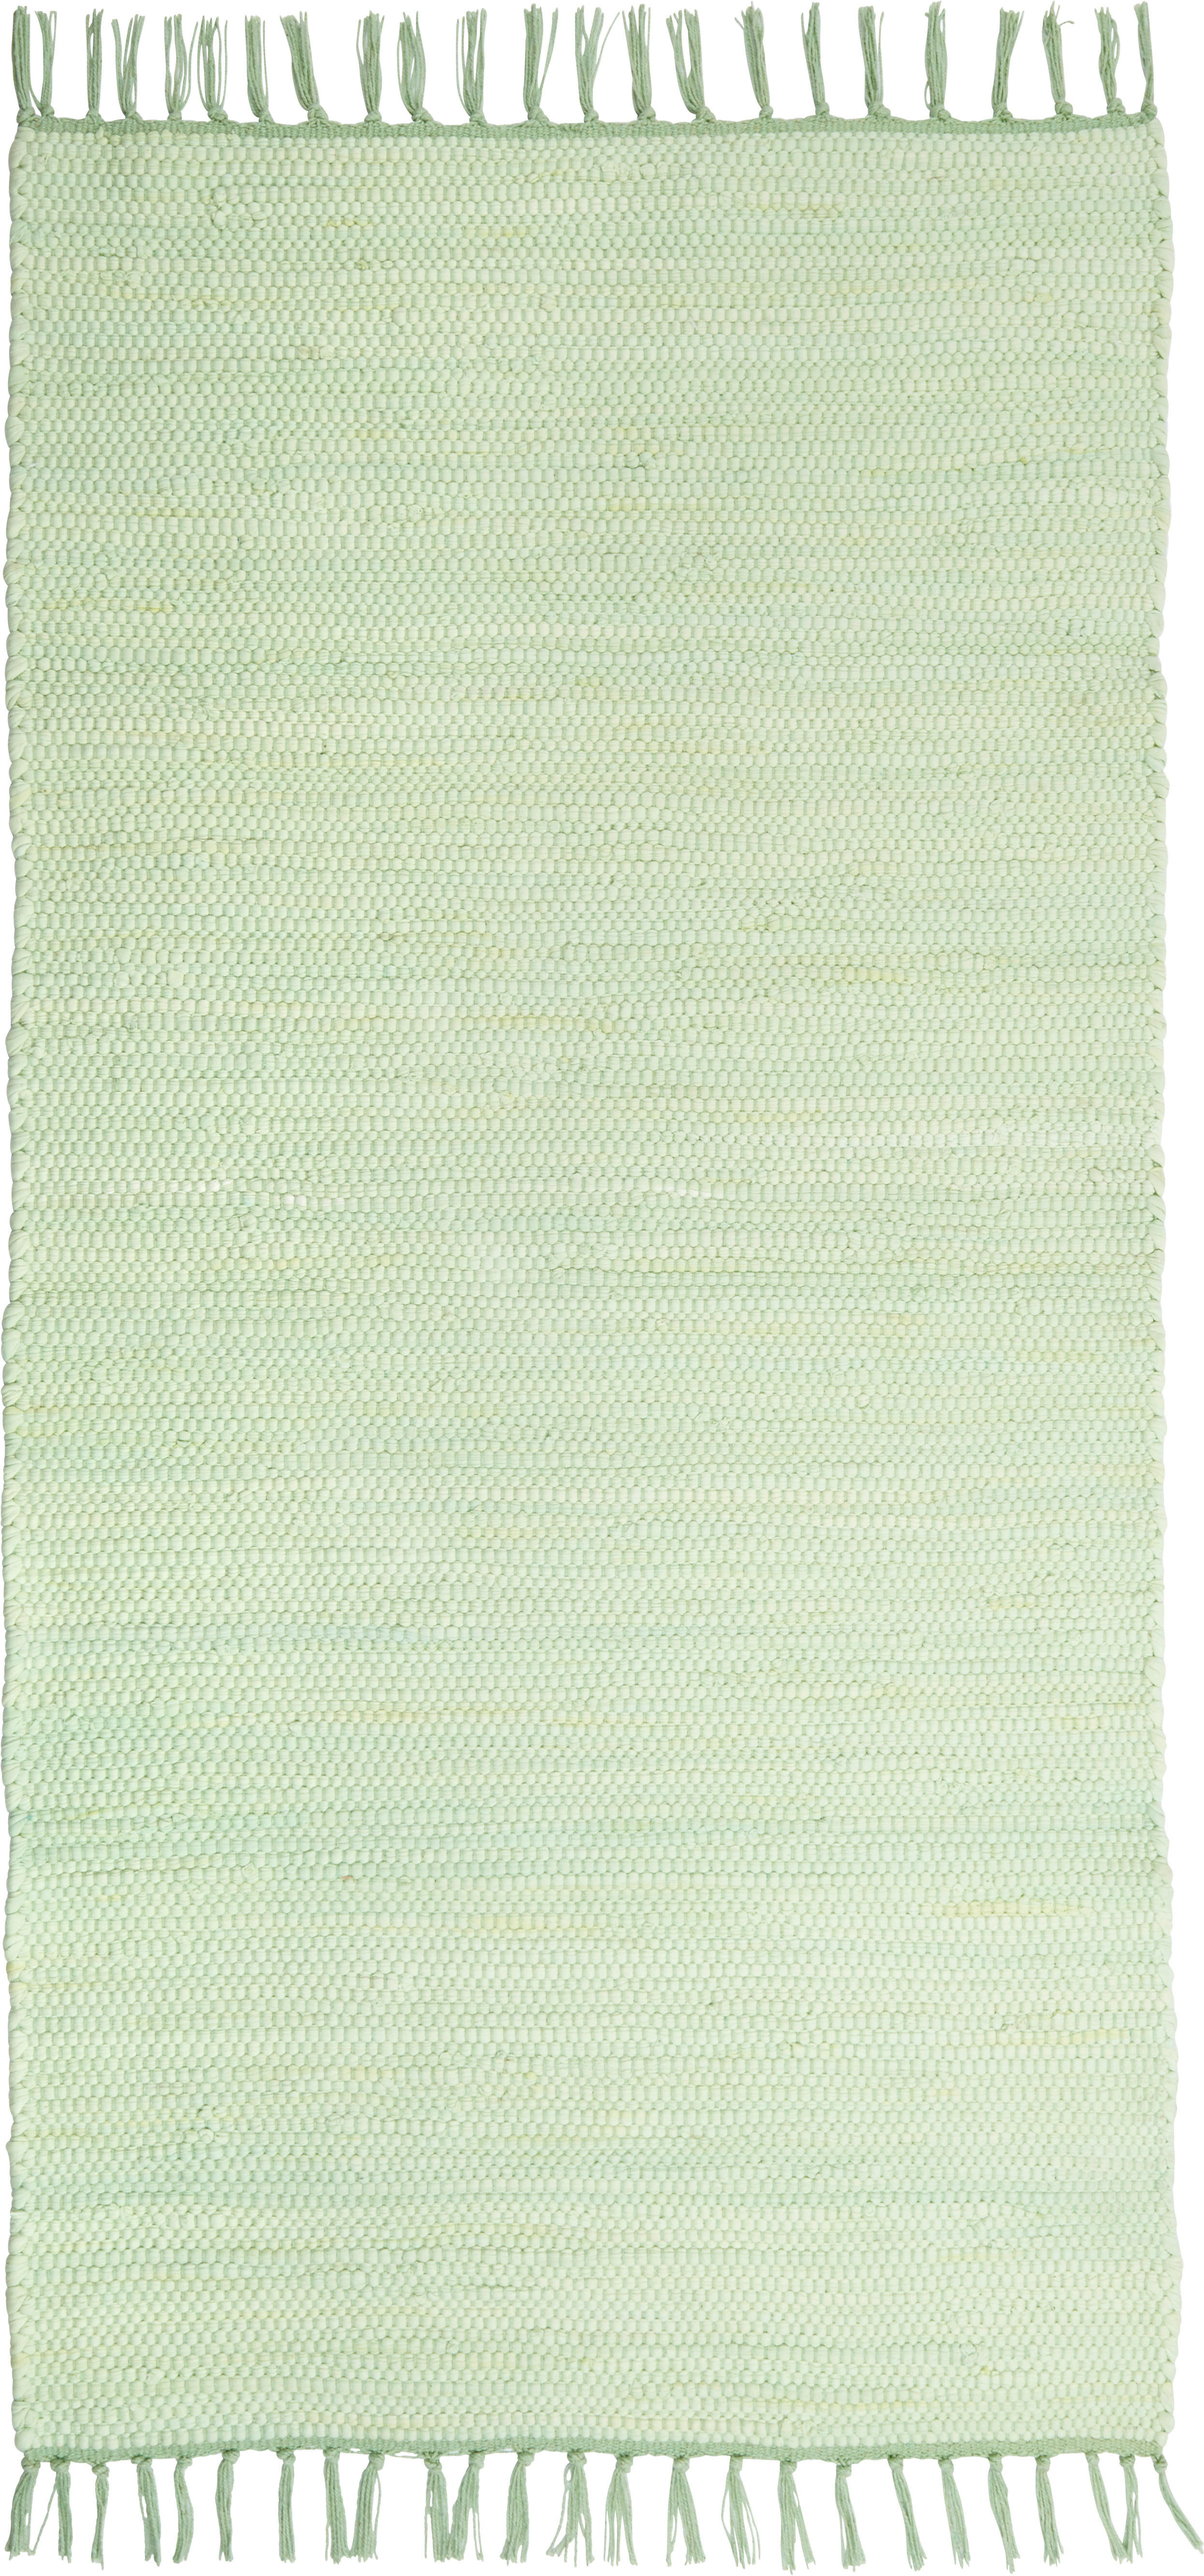 FLECKERLTEPPICH 60/120 cm  - Mintgrün, LIFESTYLE, Textil (60/120cm) - Boxxx